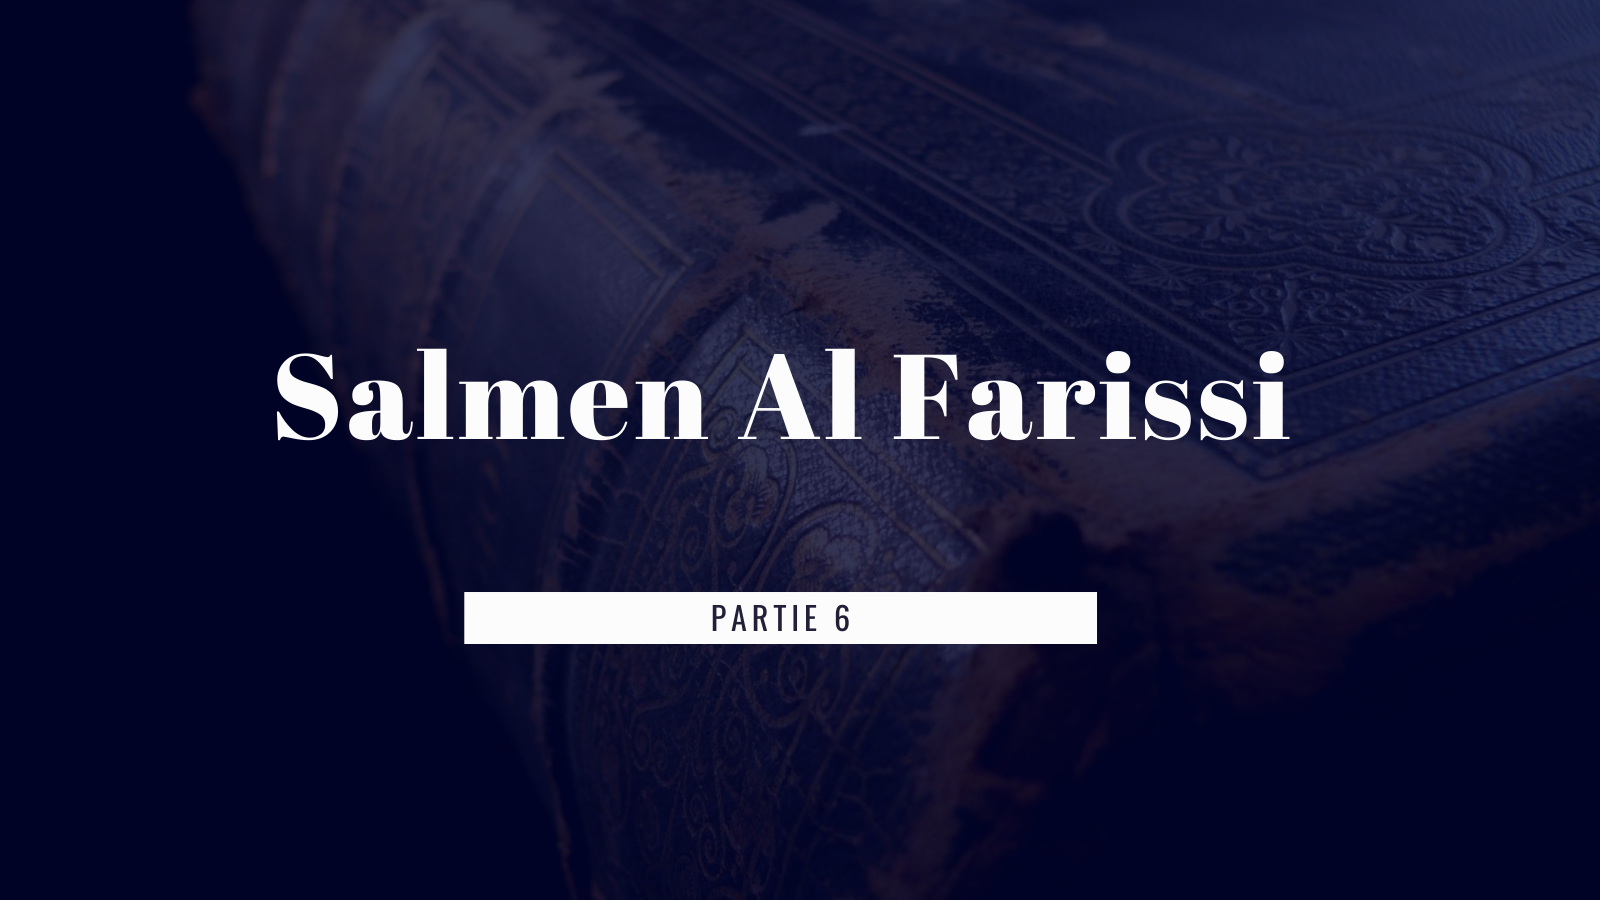 Le décès de Salmen Al Farisi (Partie 6 )